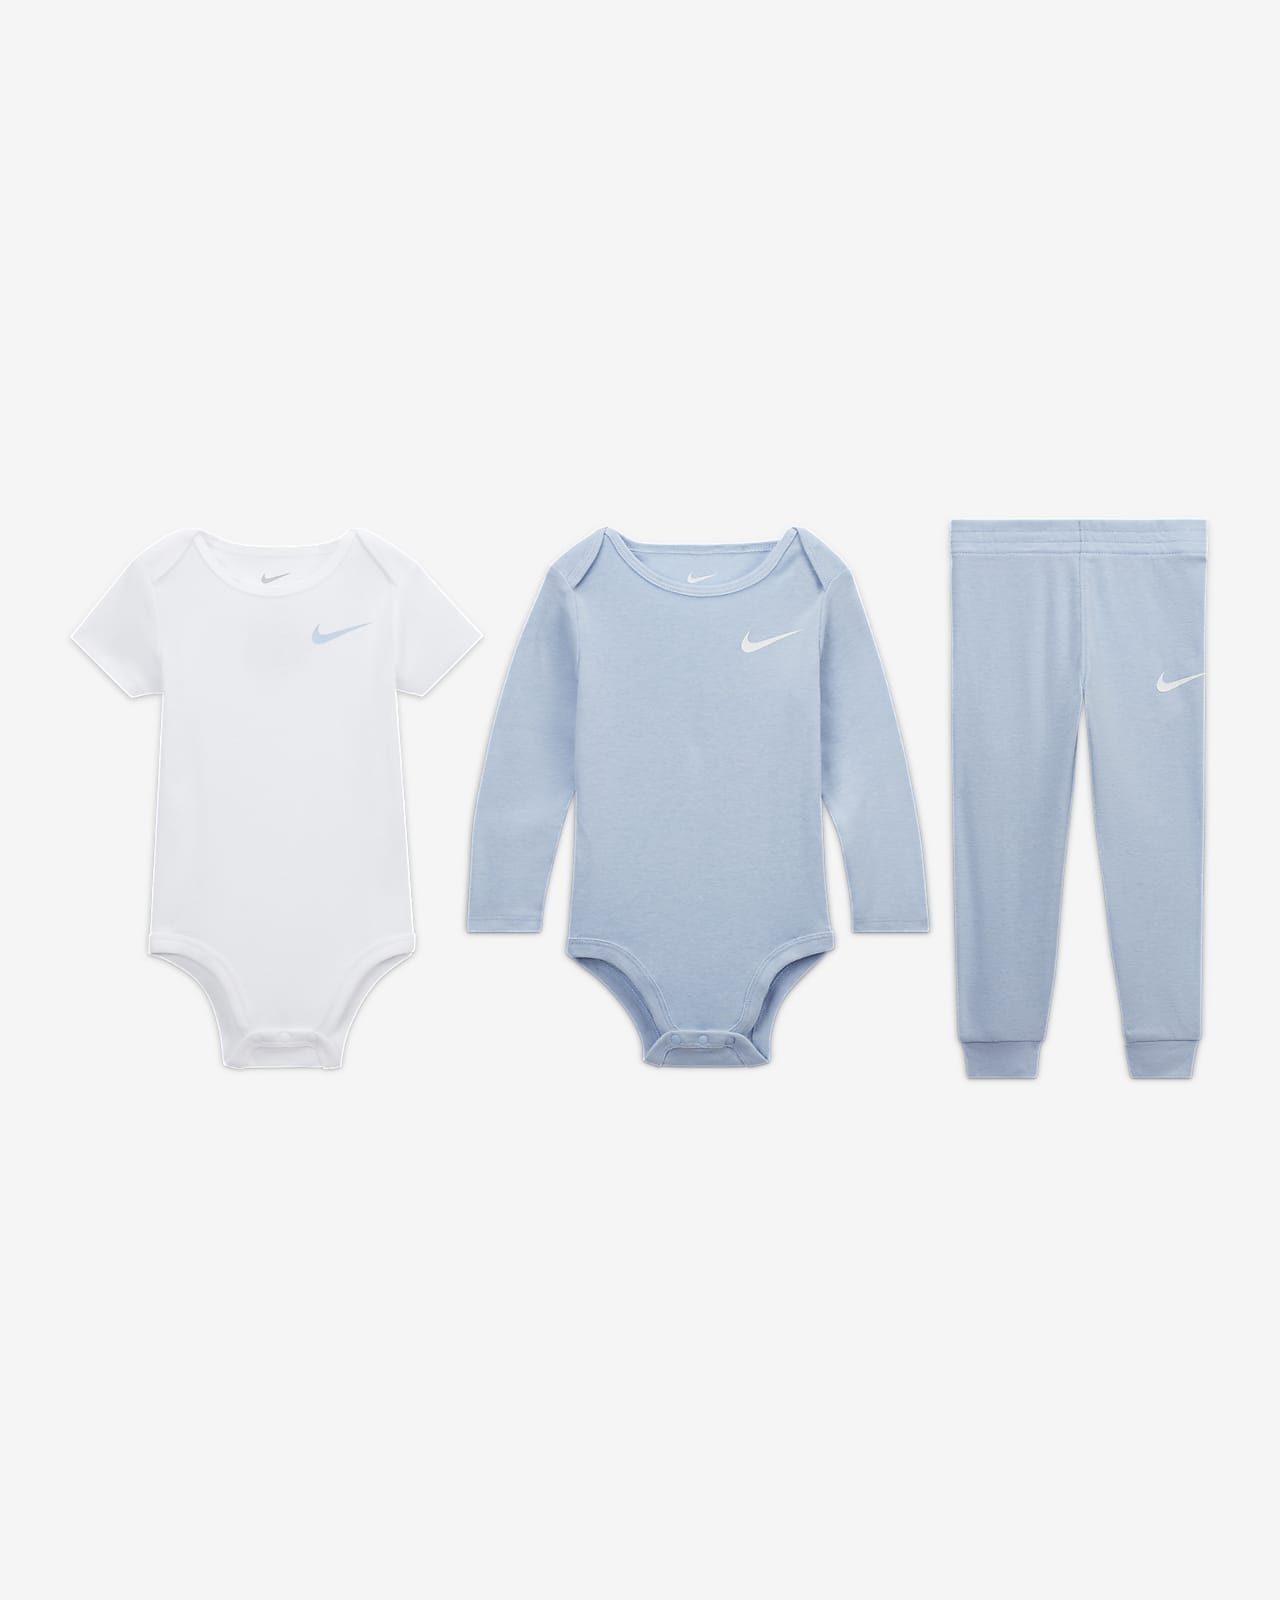 Nike Essentials Baby (12-24M) 3-Piece Bodysuit Set